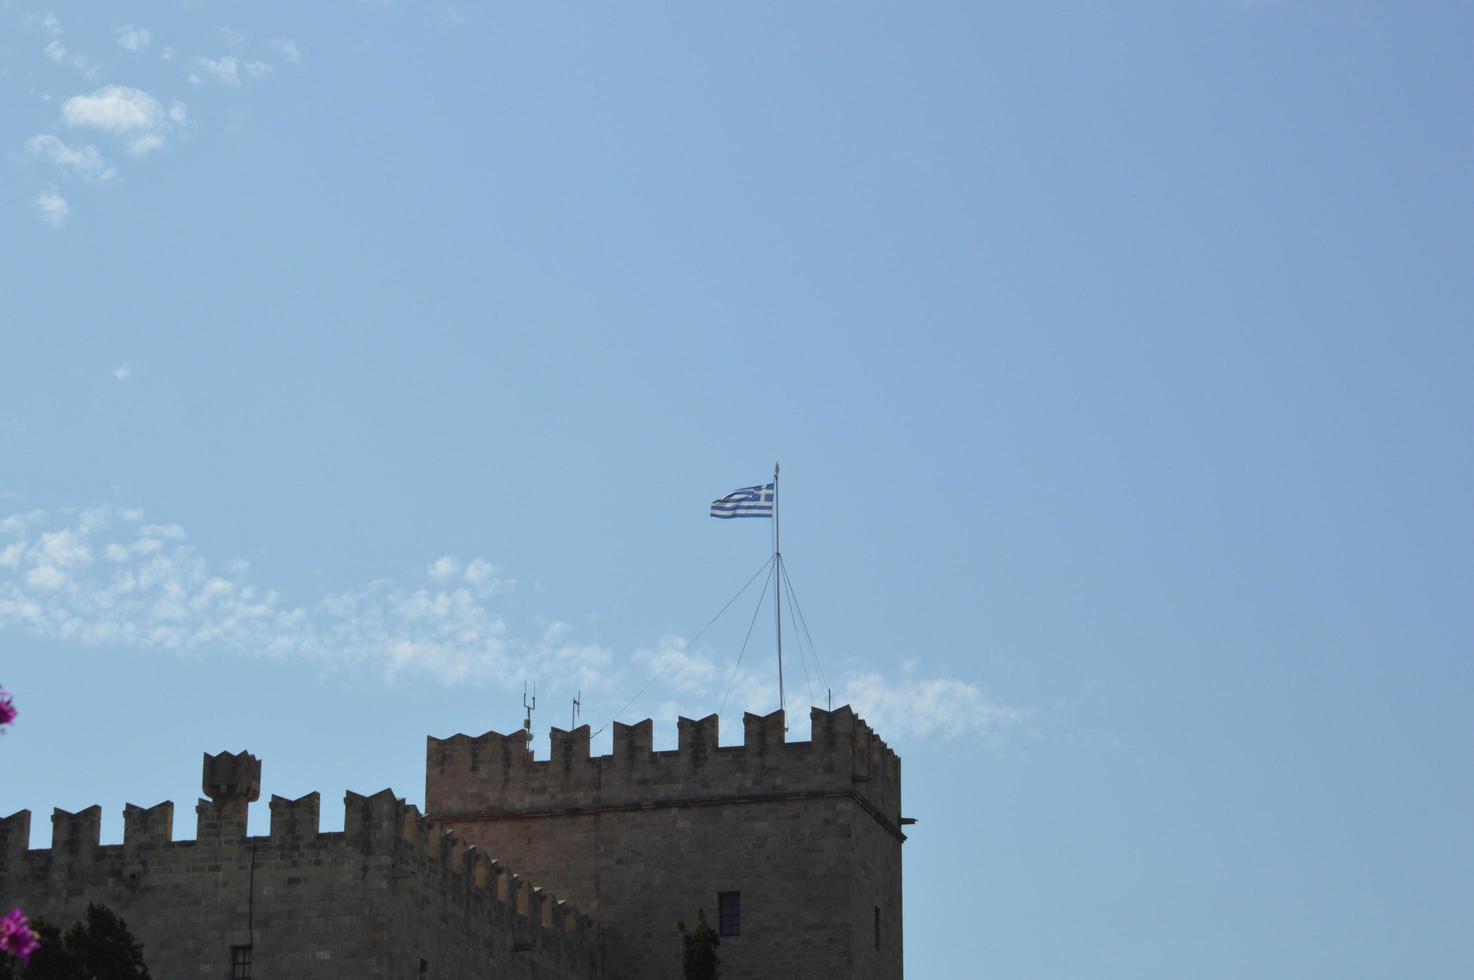 drapeau de la grèce sur le toit de la forteresse de rhodes en grèce photo